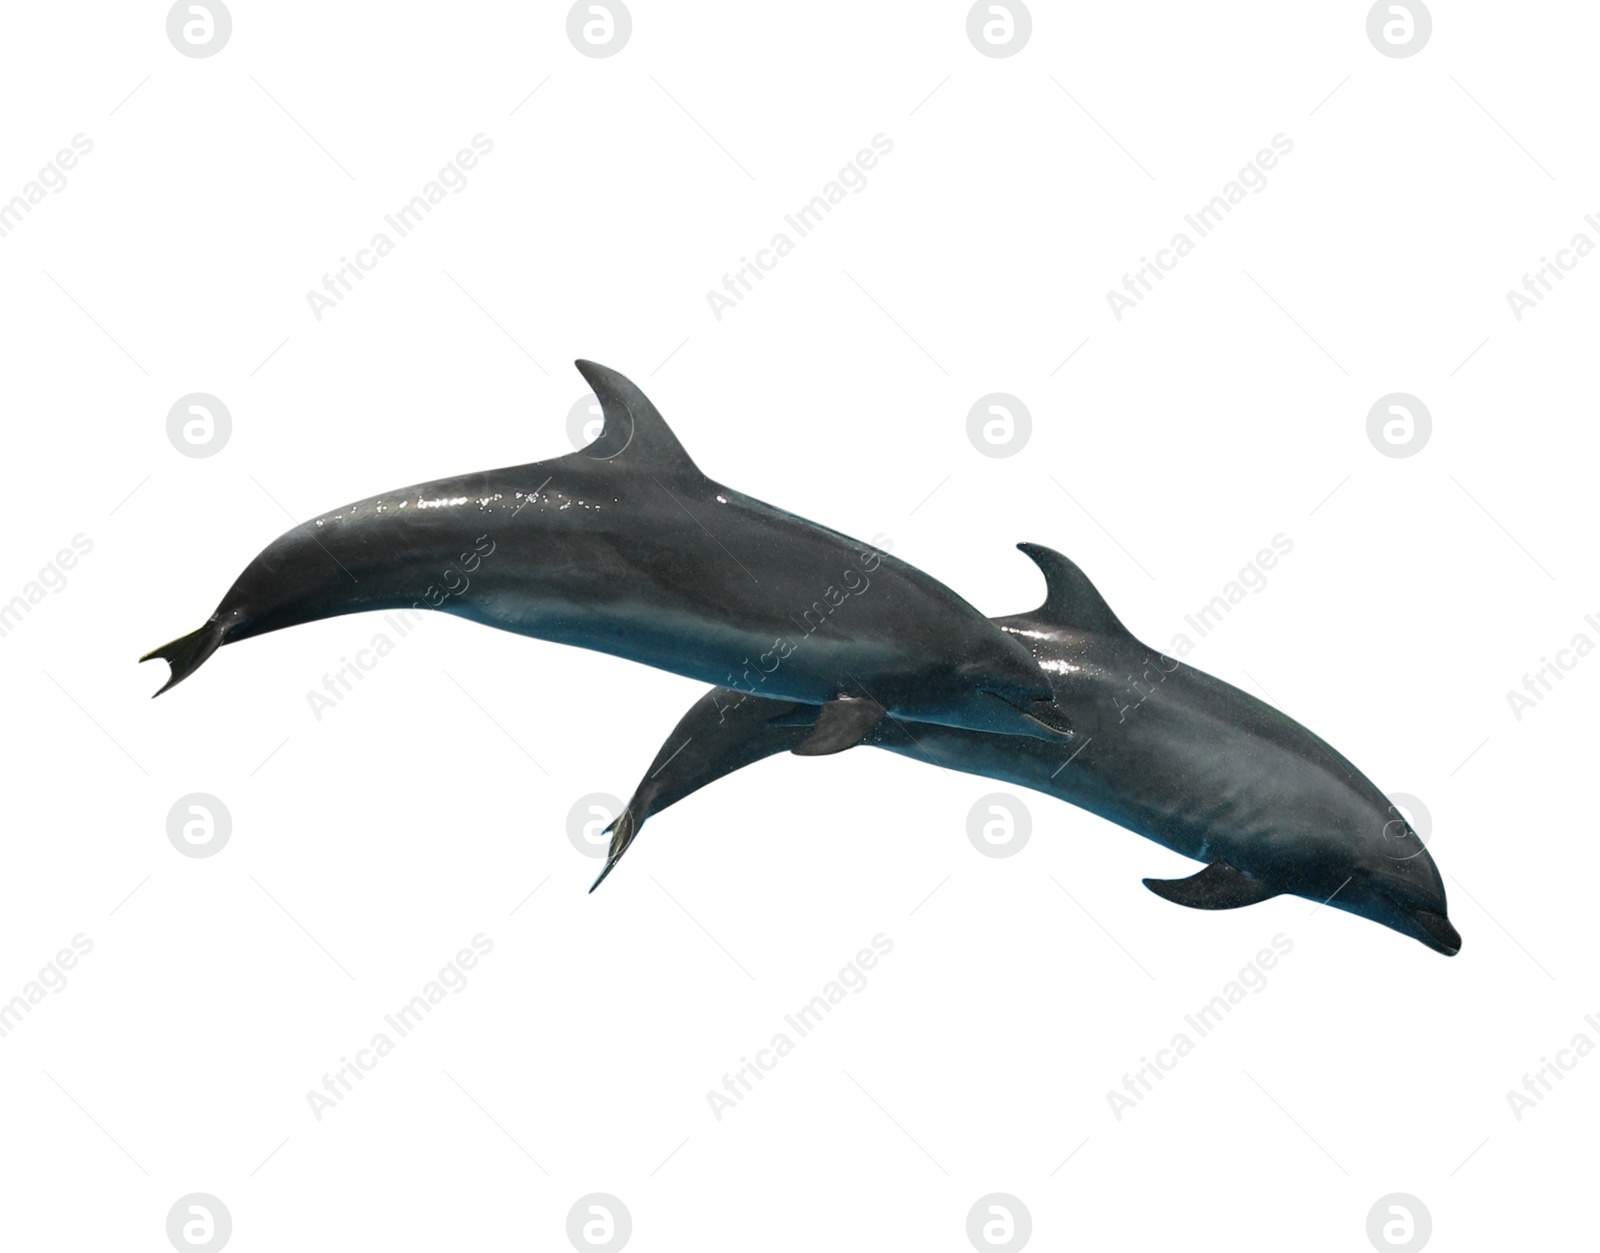 Image of Beautiful grey bottlenose dolphins on white background